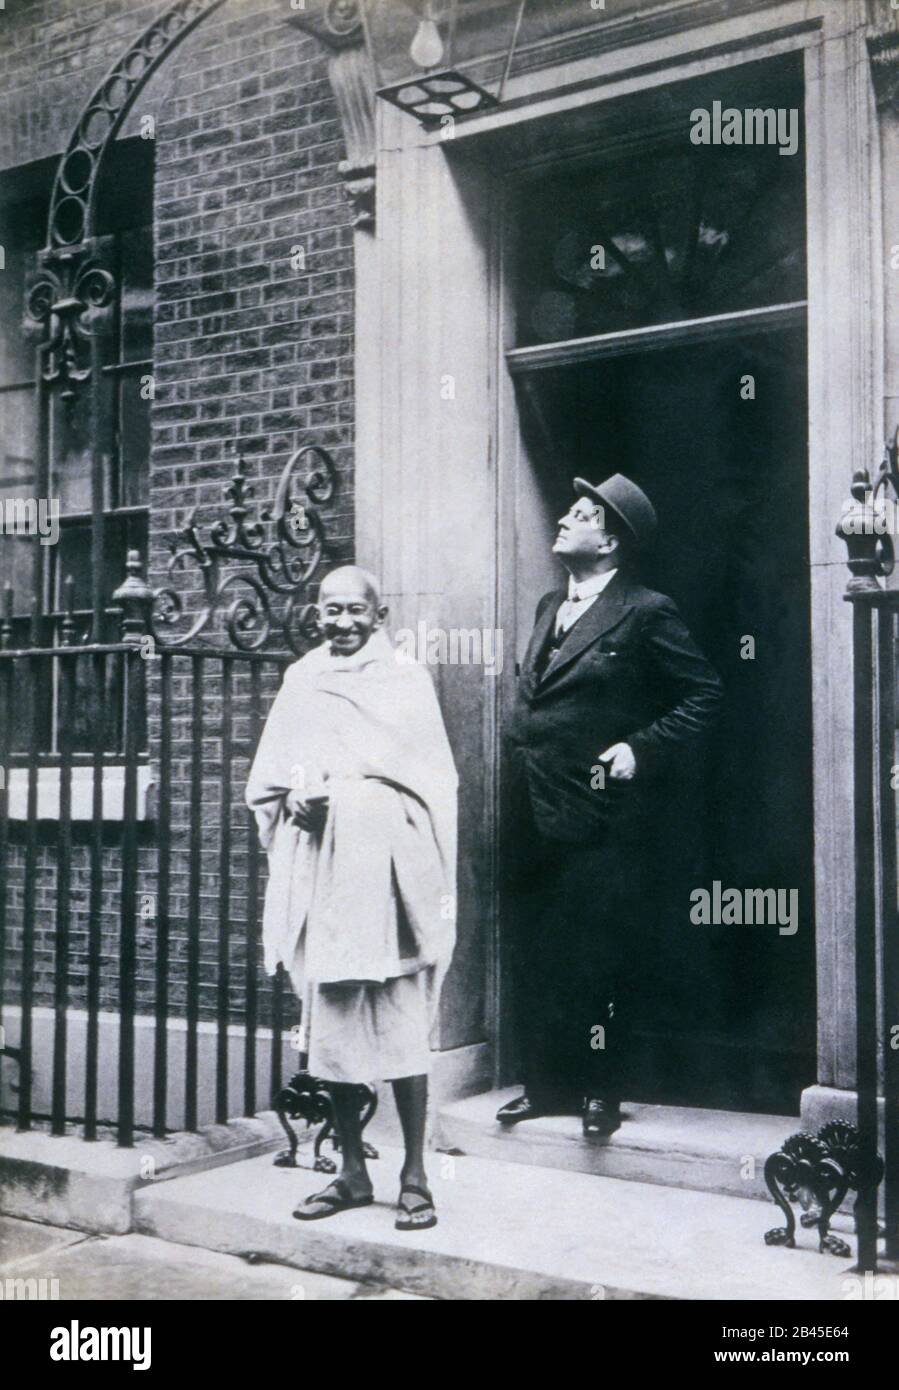 Mahatma Gandhi in piedi a 10 Downing Street, numero 10, Londra, Inghilterra, Regno Unito, Regno Unito, 1931, vecchia immagine del 1900 Foto Stock